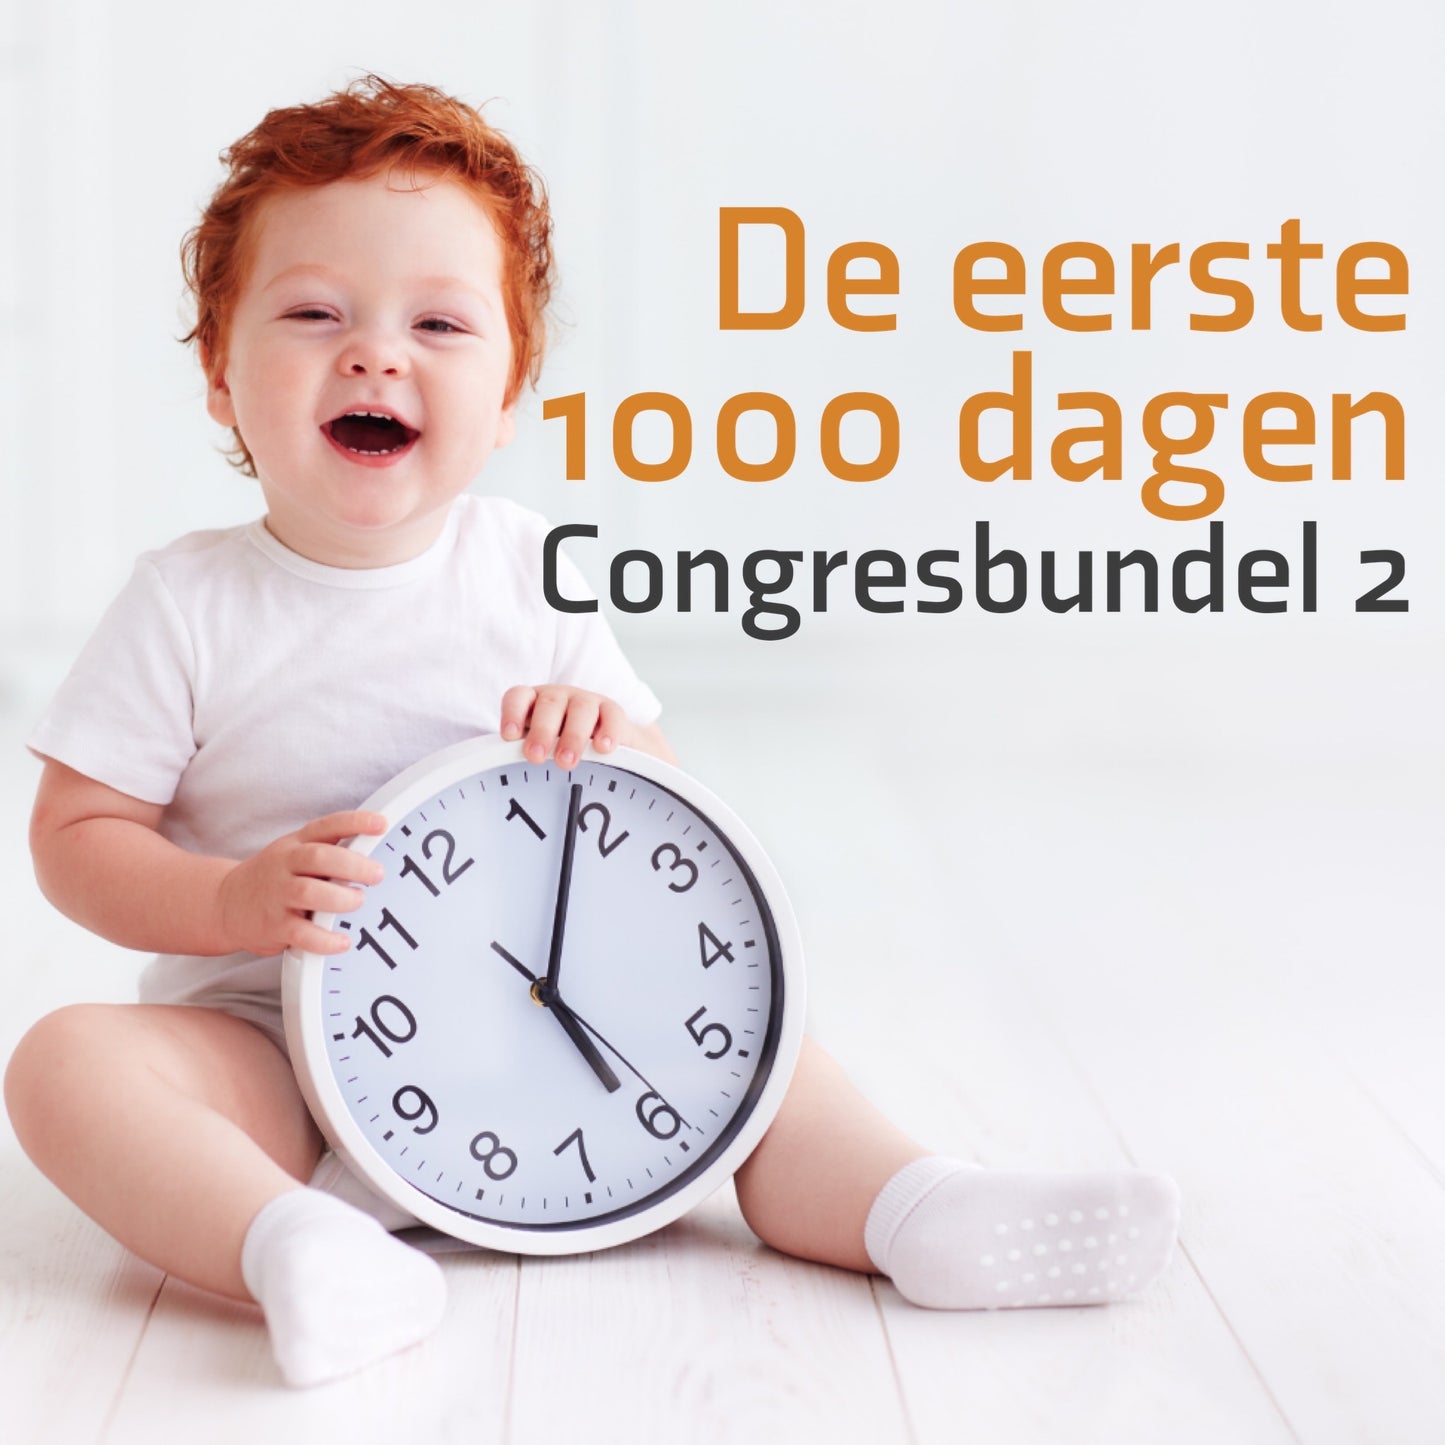 De eerste 1000 dagen: Congresbundel 2 — Fien Demeulemeester, Anja Caers, dr Nicola De Cono en Els van Steijn